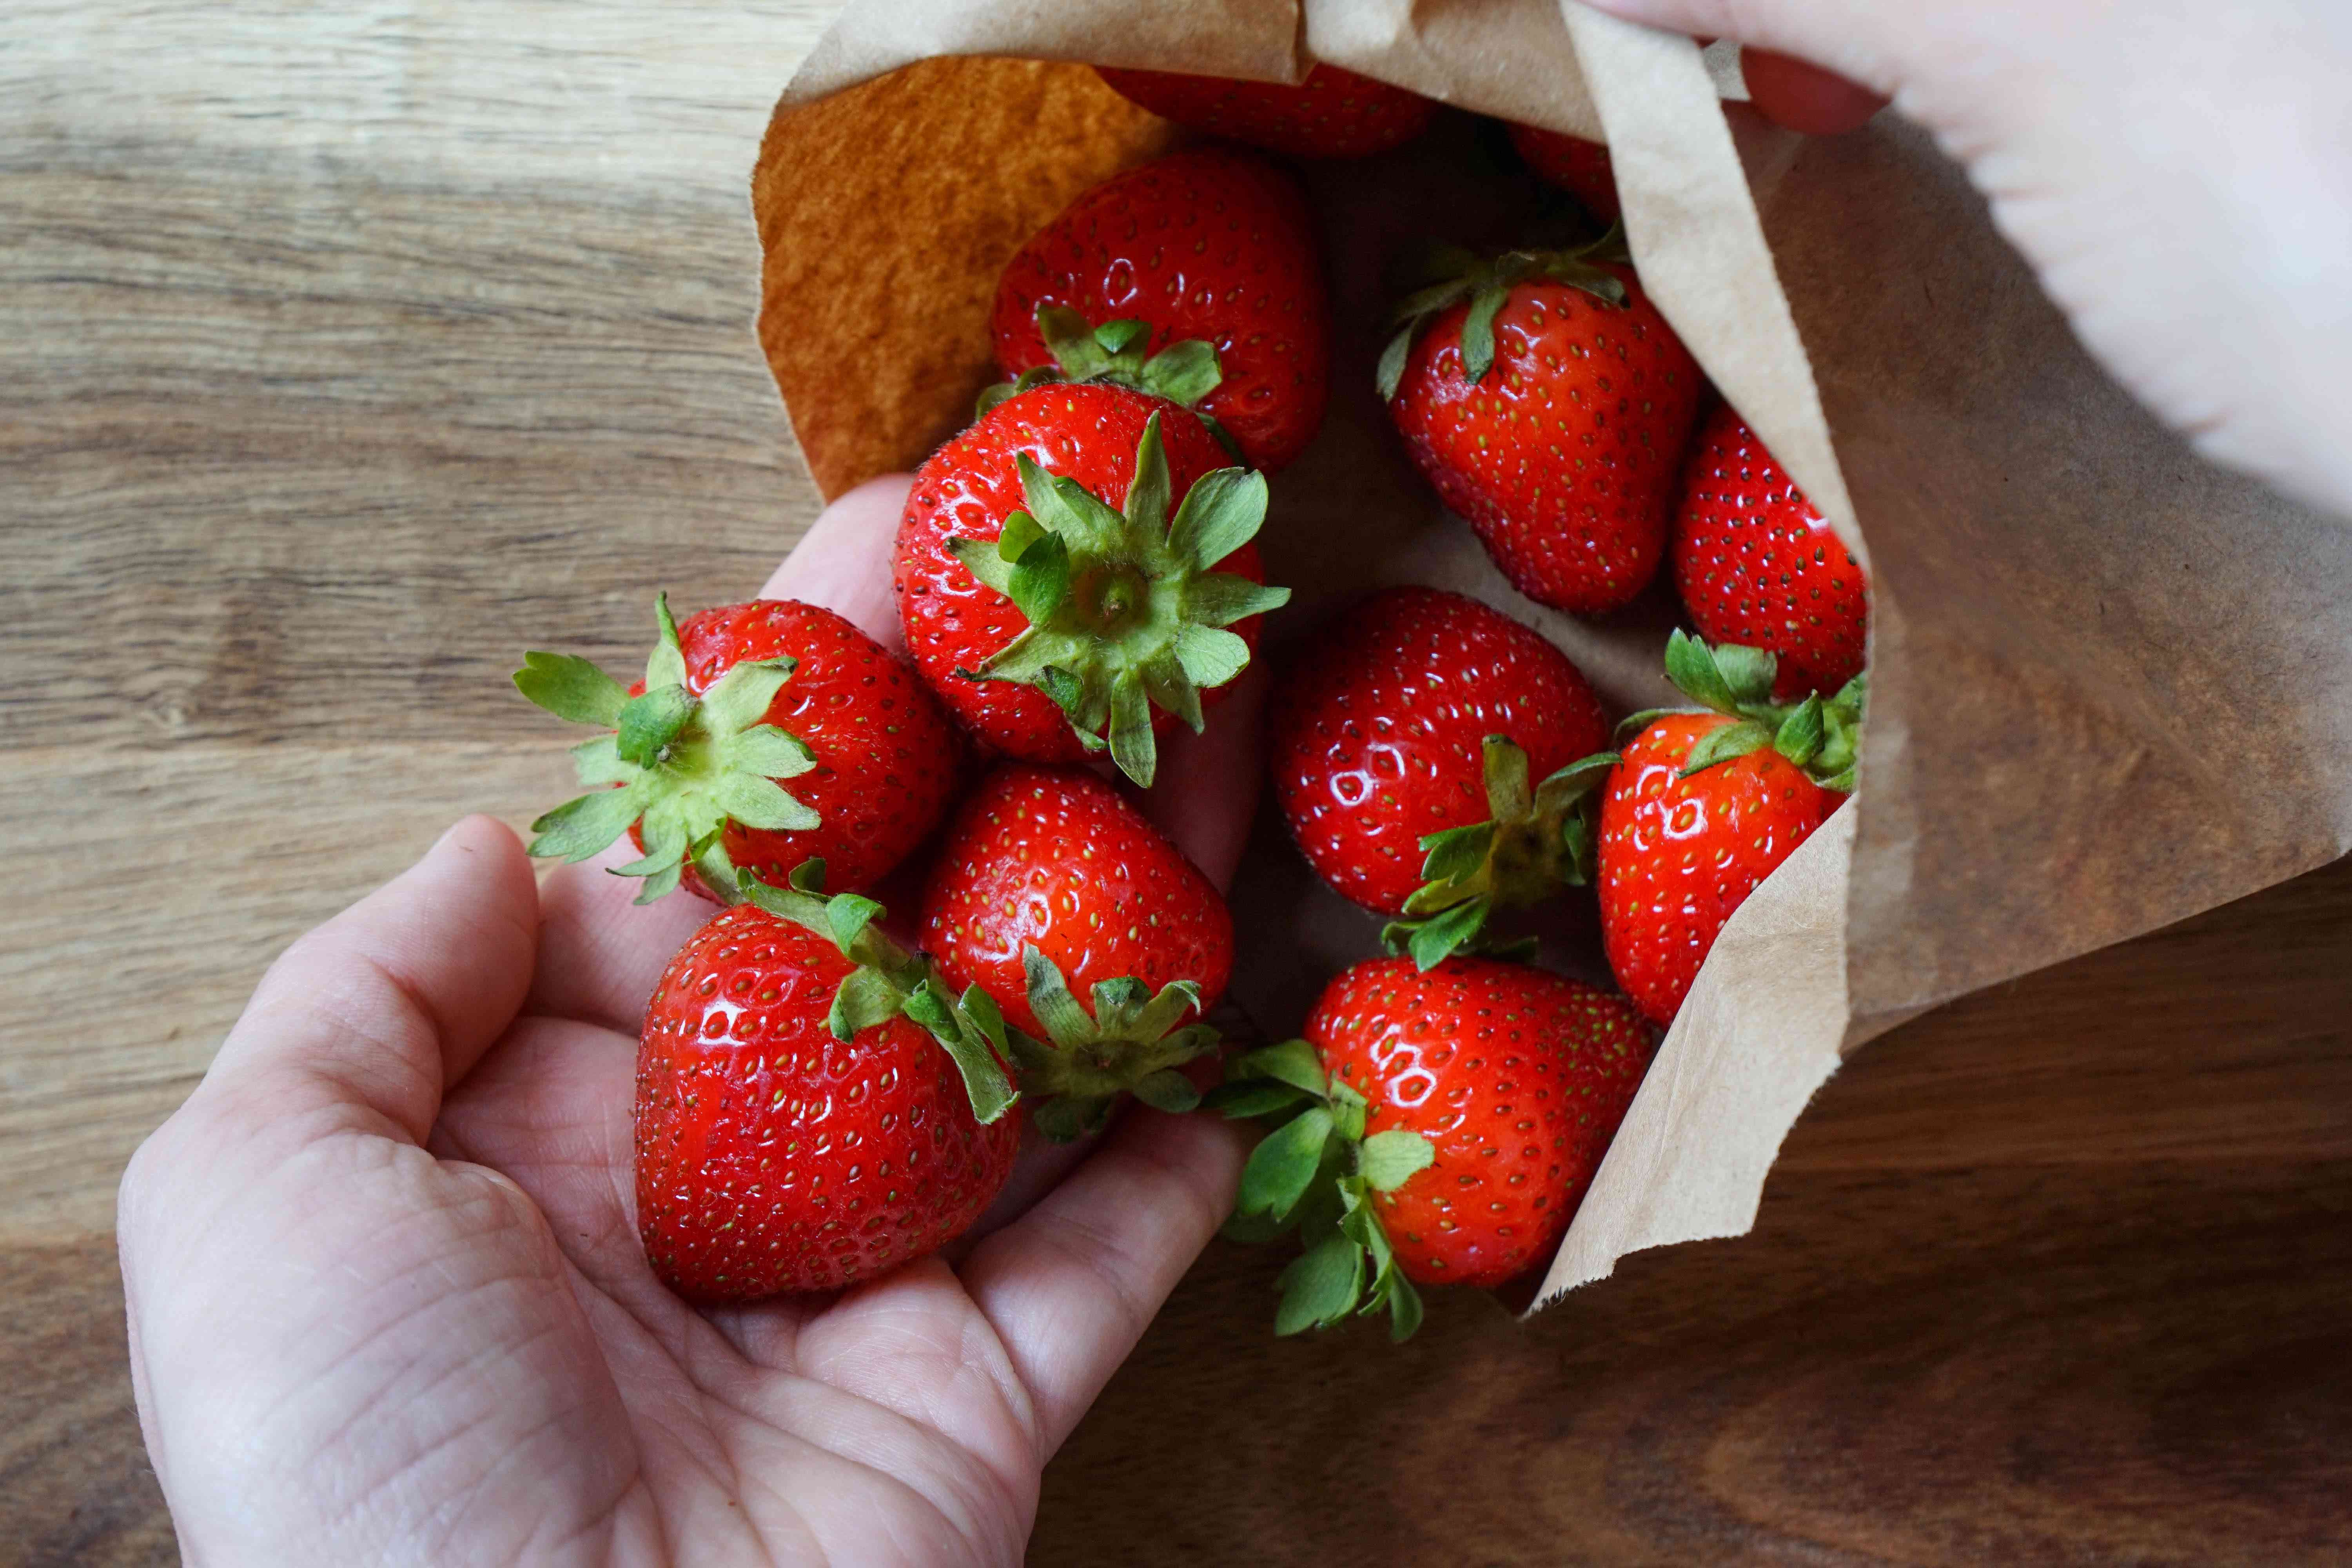 双手捧着新鲜的草莓，从棕色纸袋里溢出来